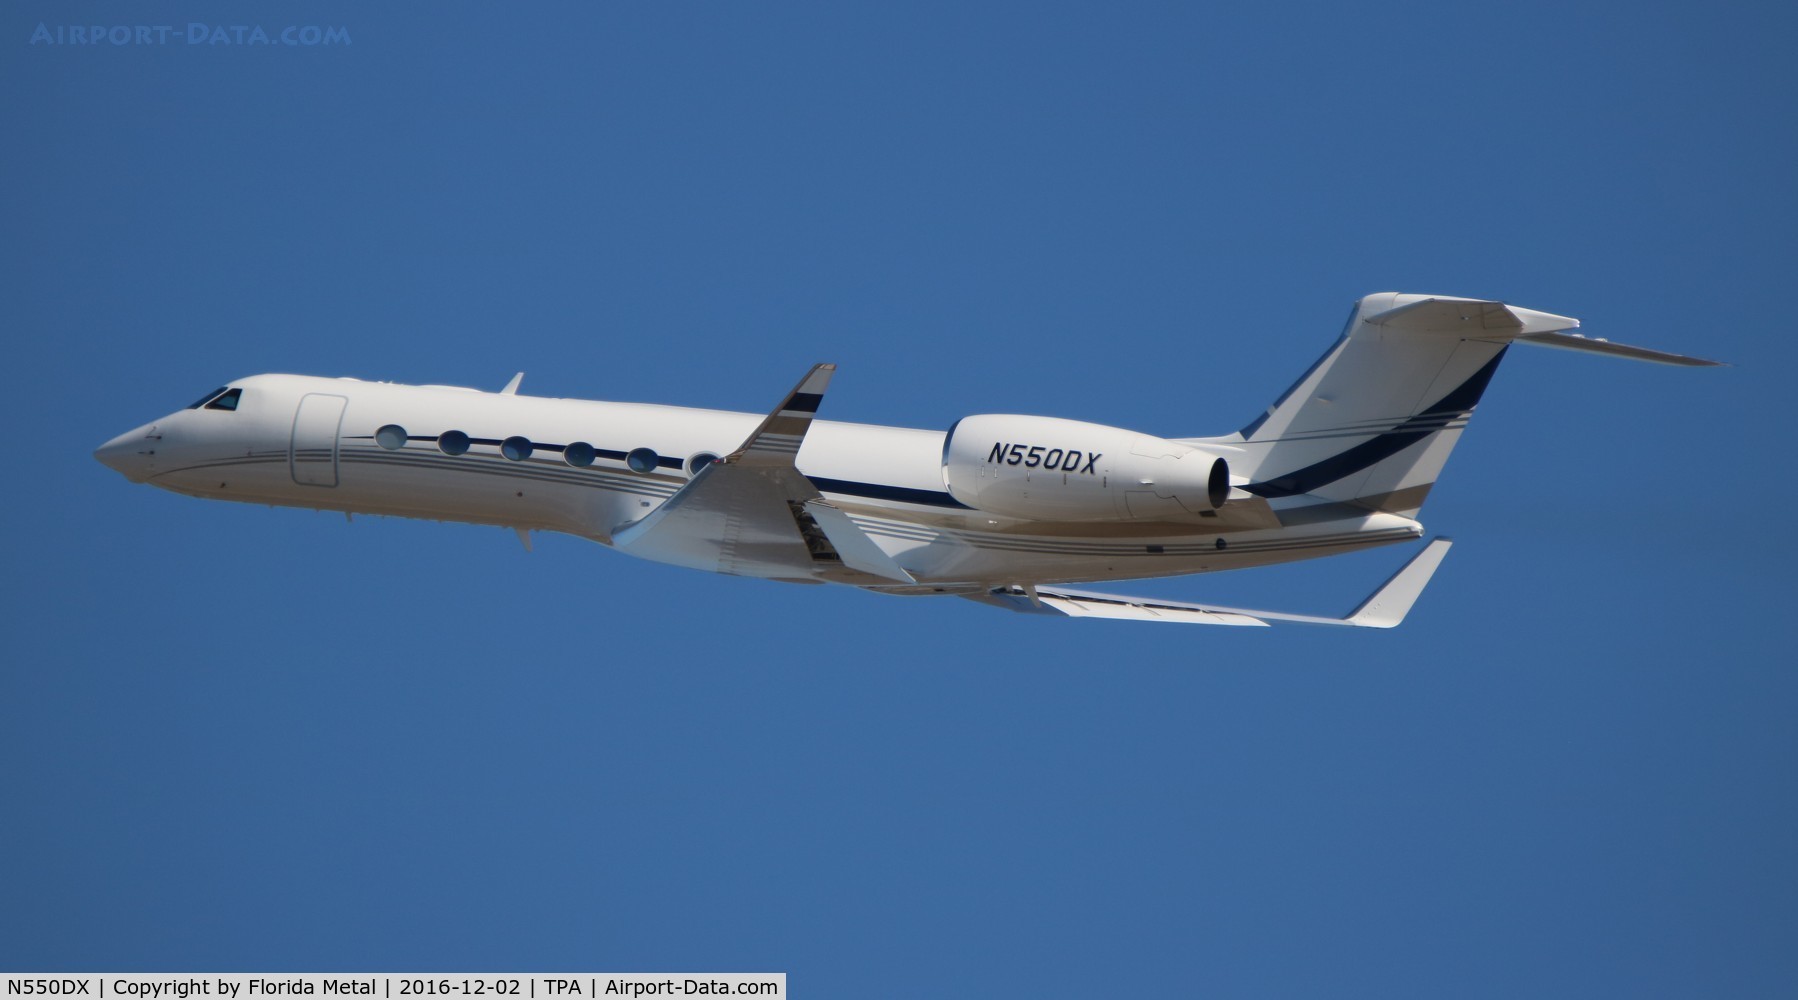 N550DX, 2015 Gulfstream Aerospace GV-SP (G550) C/N 5517, Gulfstream 550